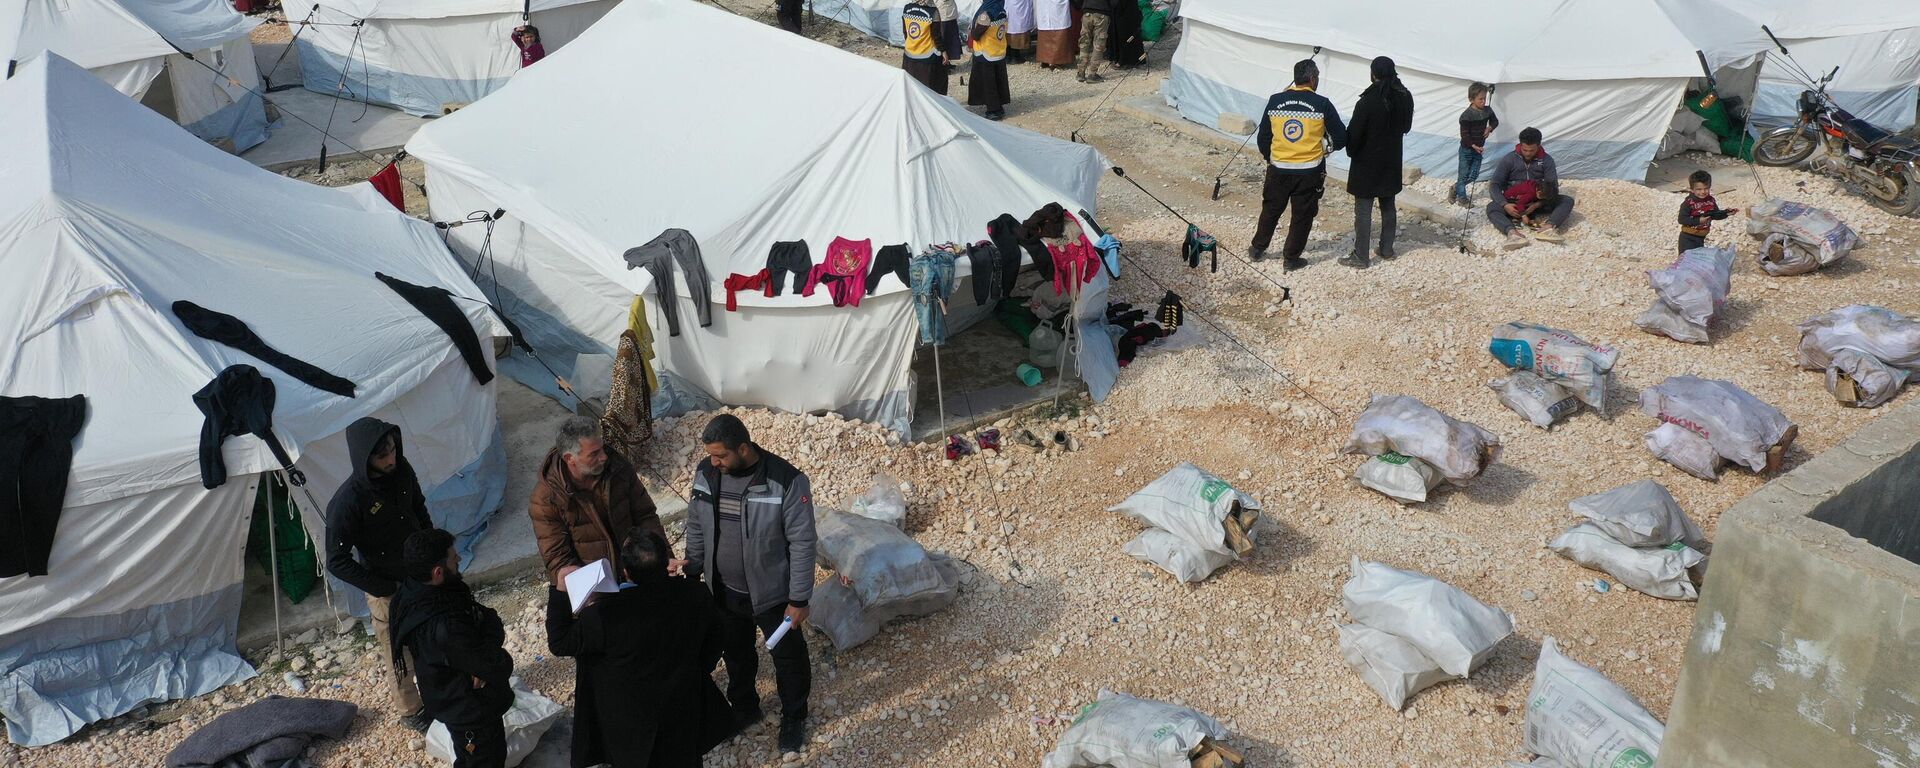 Vista aérea mostra fileiras de tendas montadas por voluntários para abrigar temporariamente as pessoas vítimas do terremoto na província de Idlib, no noroeste da Síria, 11 de fevereiro de 2023 - Sputnik Brasil, 1920, 12.02.2023